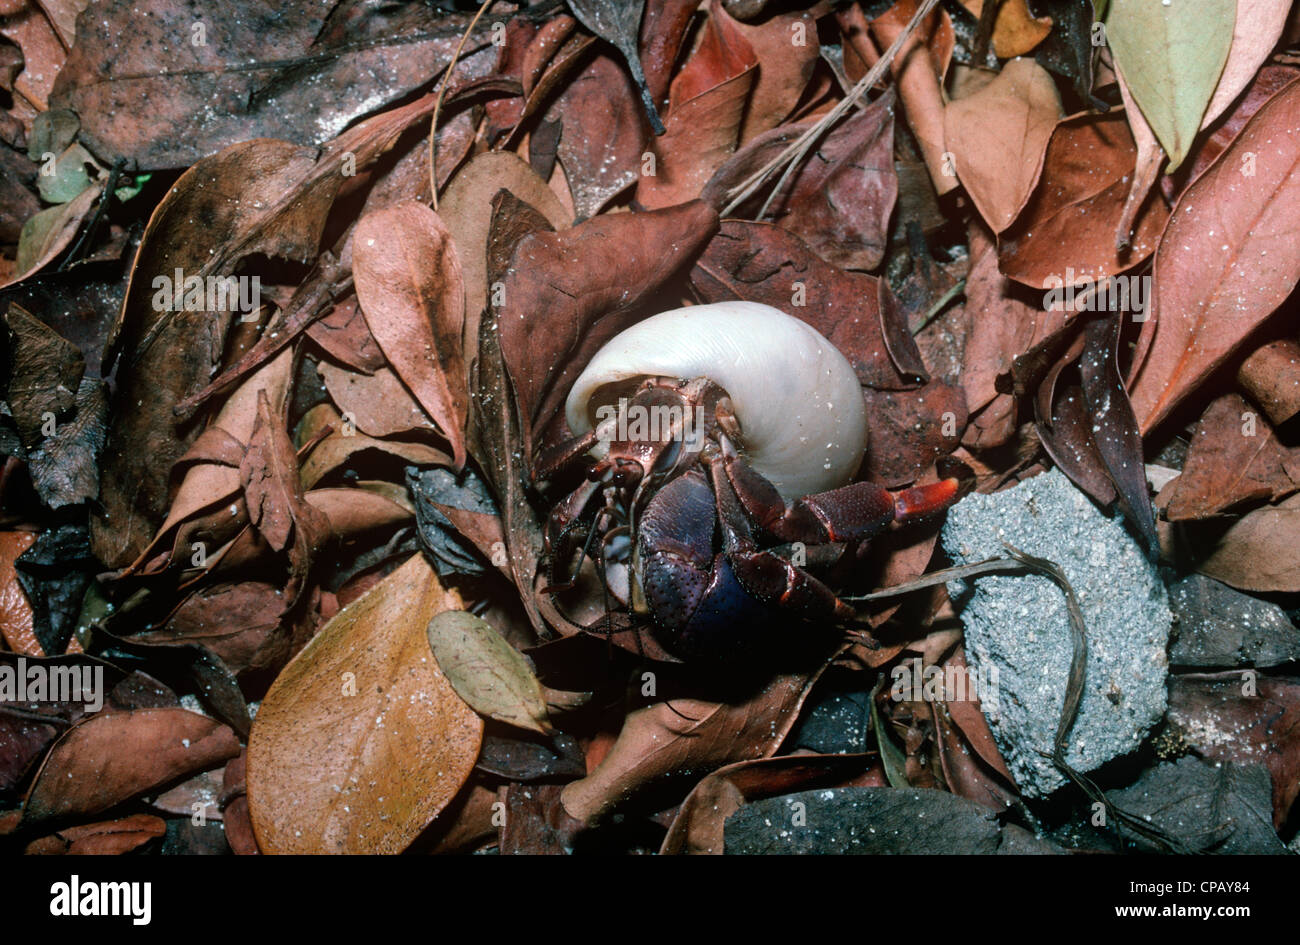 Soldier crab (Coenobita clypeatus: Coenobitidae) Cuba. Land hermit crab Stock Photo